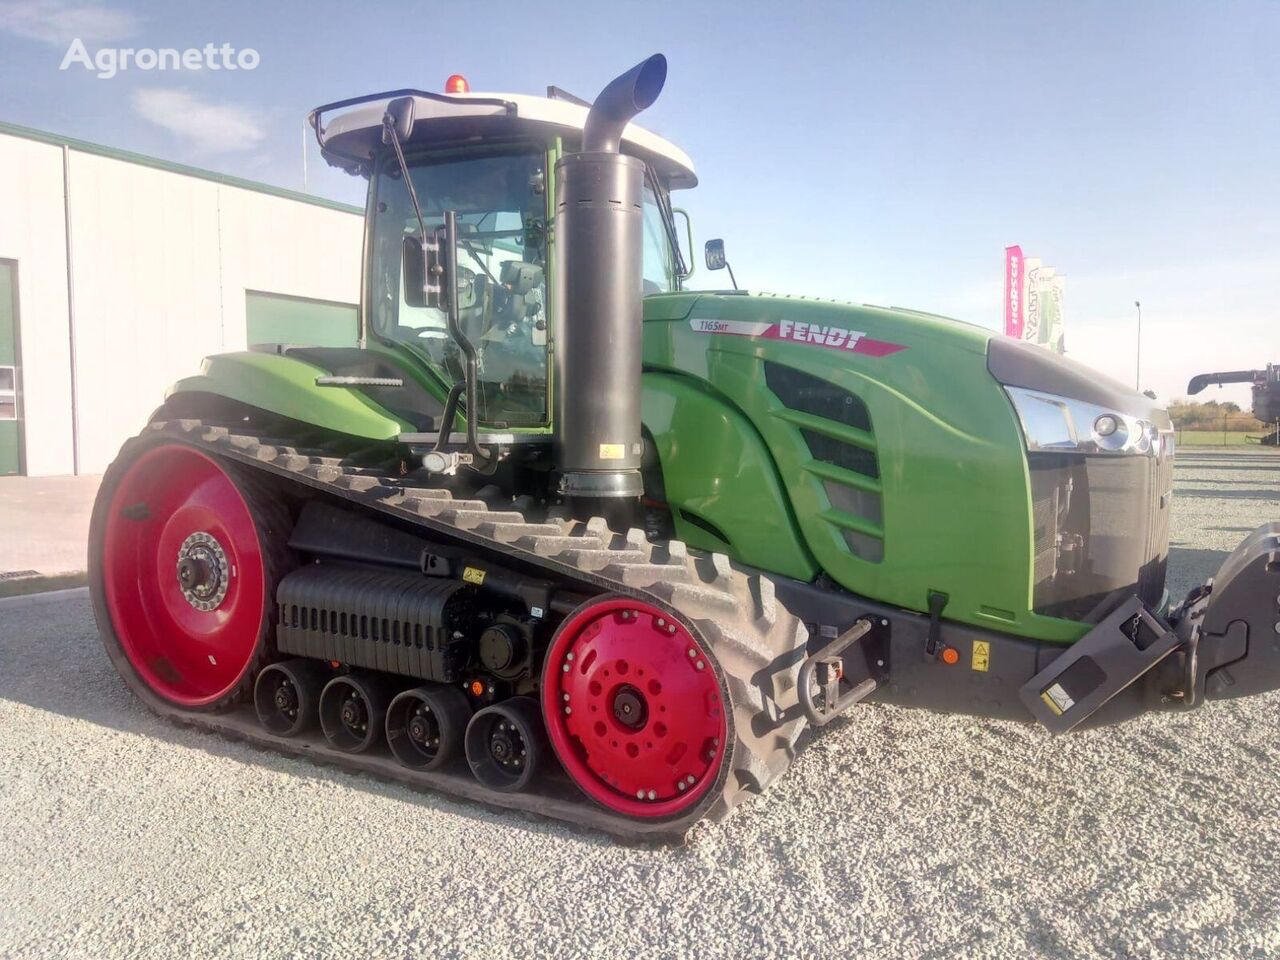 Fendt 1165 MT Vario S4 crawler tractor